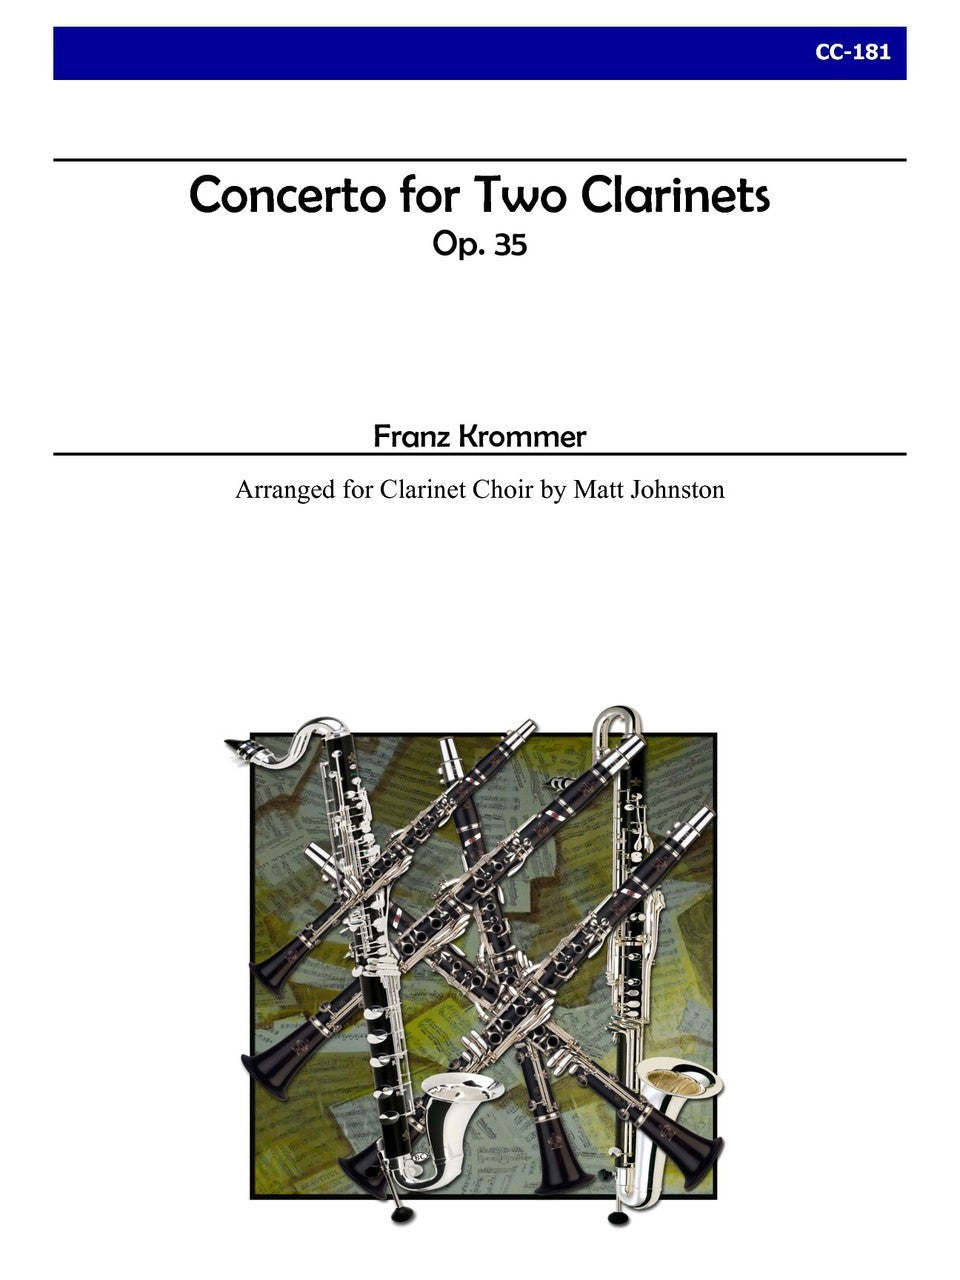 Krommer (arr. Matt Johnston) - Concerto for Two Clarinets, Op. 35 for Clarinet Choir